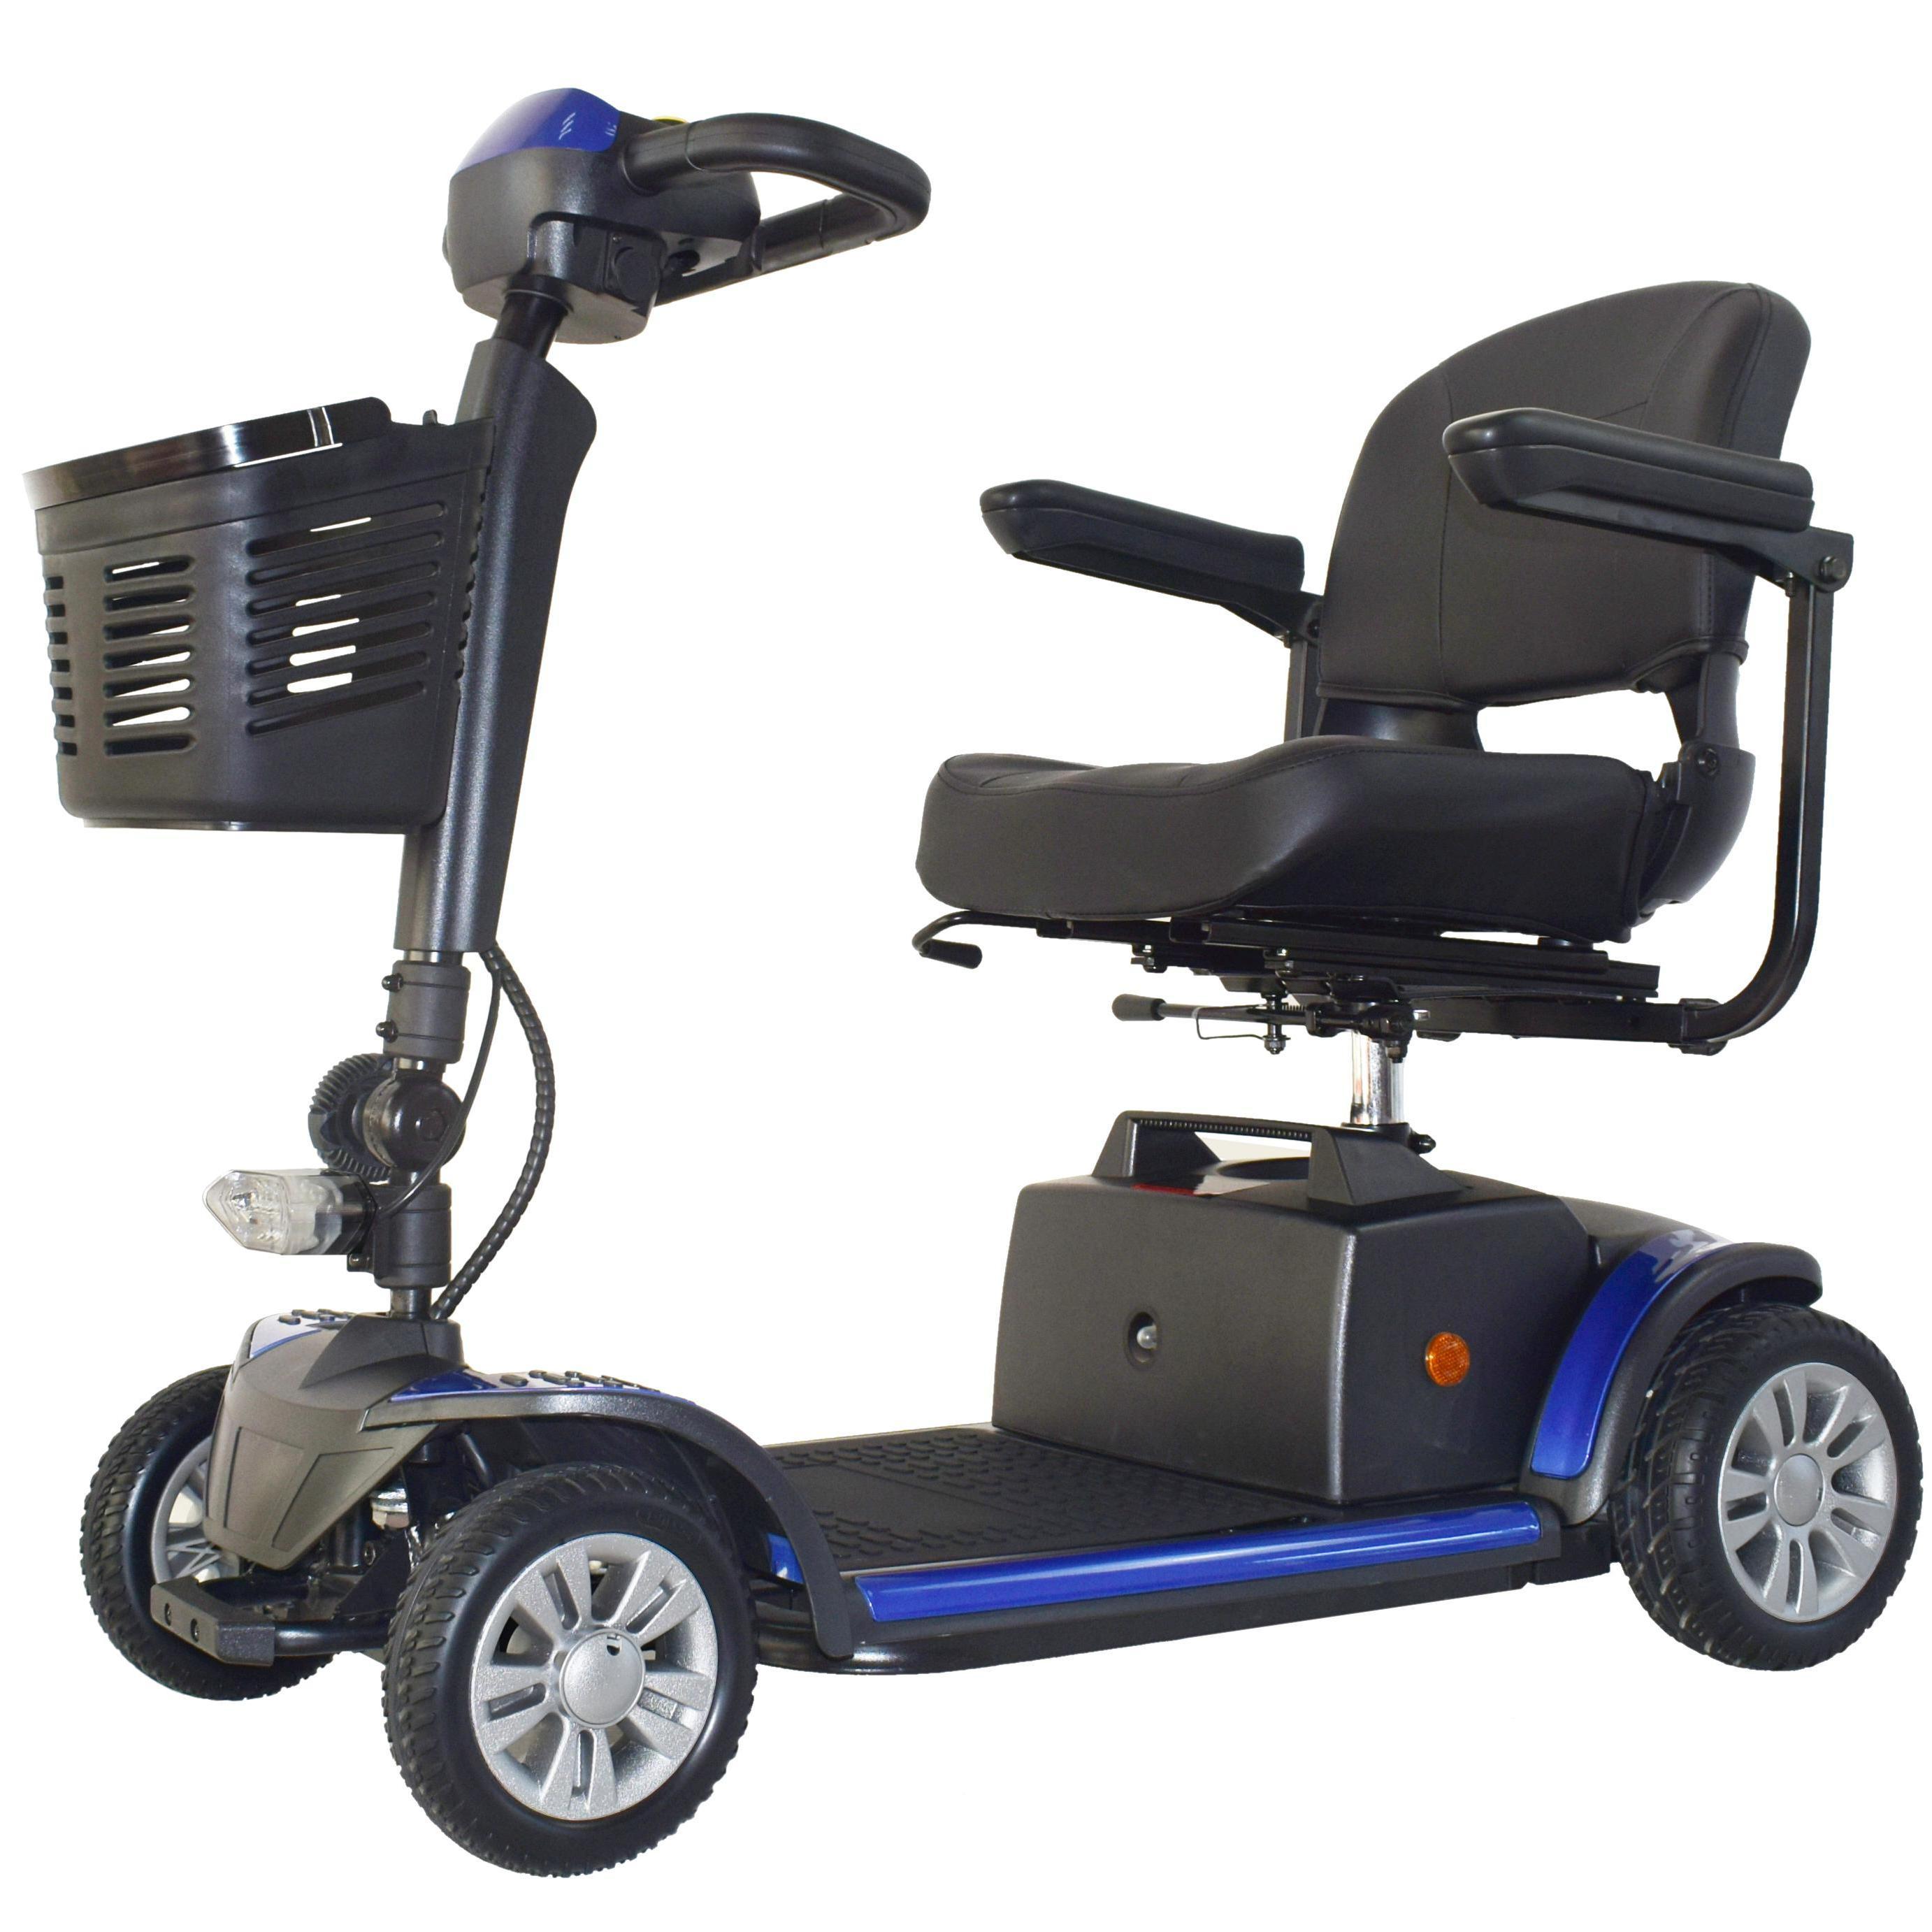 Scooter de mobilitat CE desmuntable de 4 rodes Jiangte FM10-20AH per a gent gran, vermell/blau/taronja/groc Imatge destacada disponible